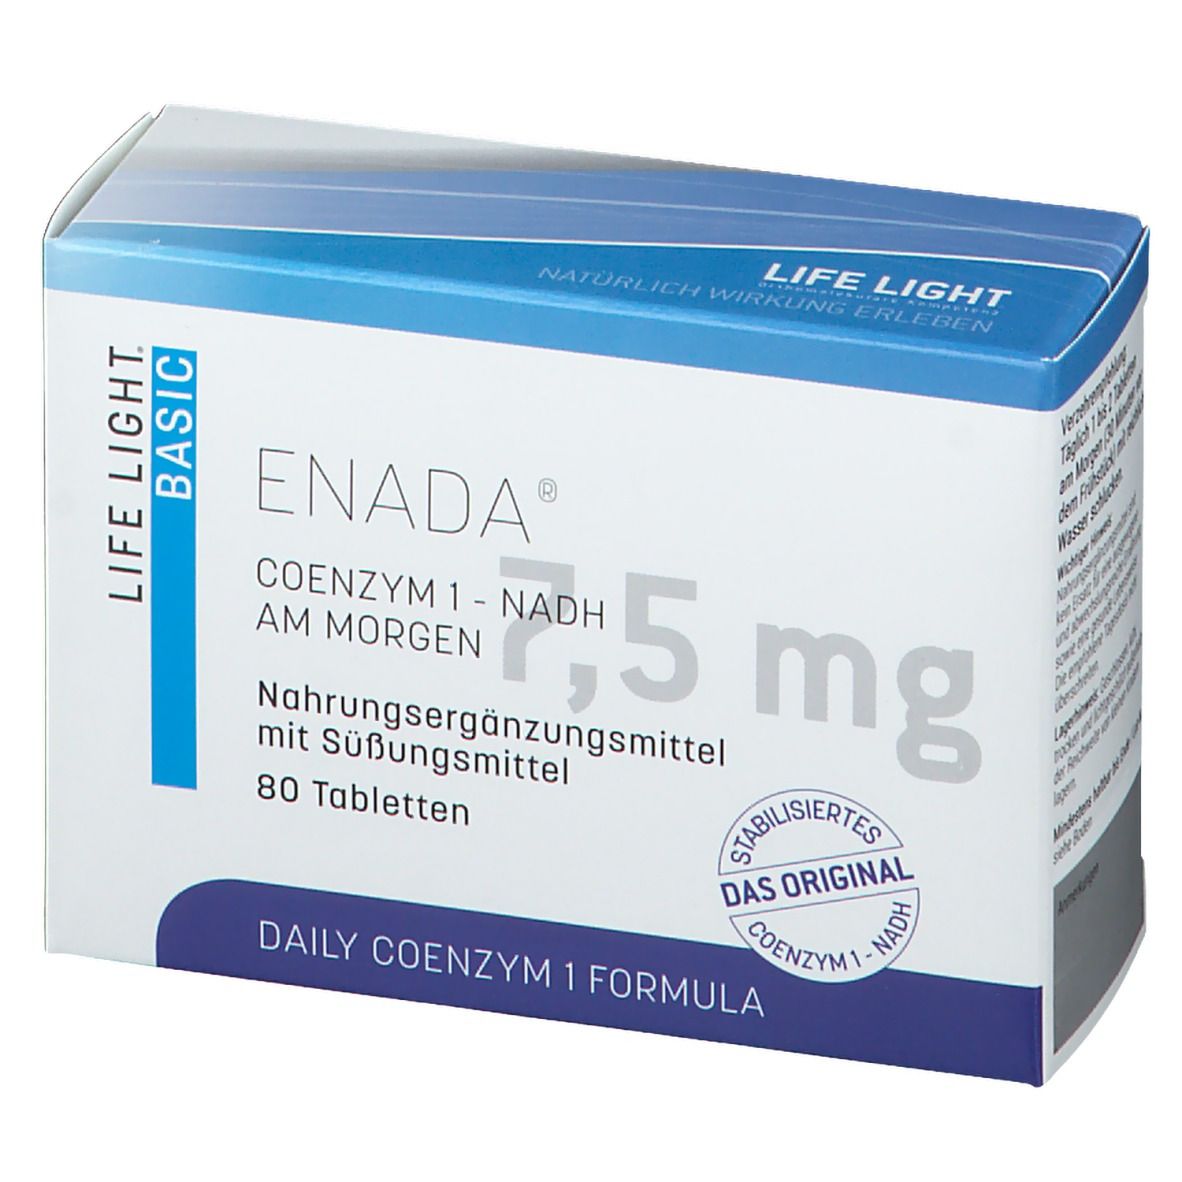 LIFE LIGHT ENADA® Coenzym 1-NADH